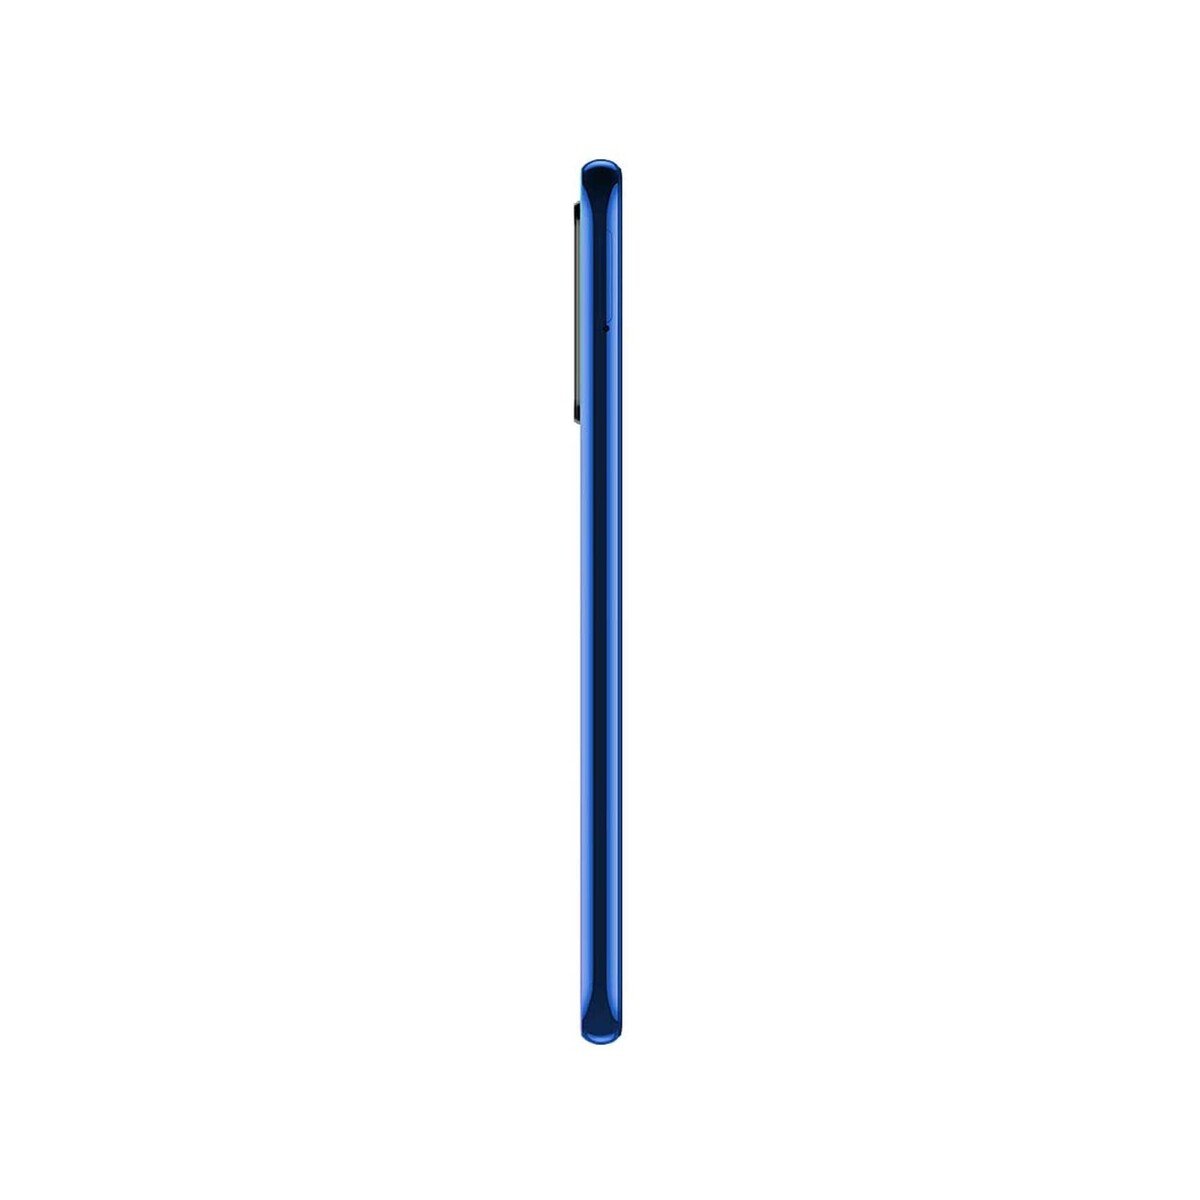 Xiaomi Redmi Note8-2021 64GB Neptune Blue